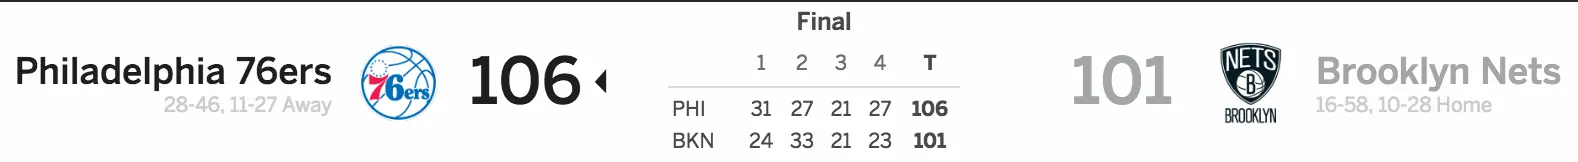 Brooklyn Nets vs Philadelphia 76ers 3/28/17 Score